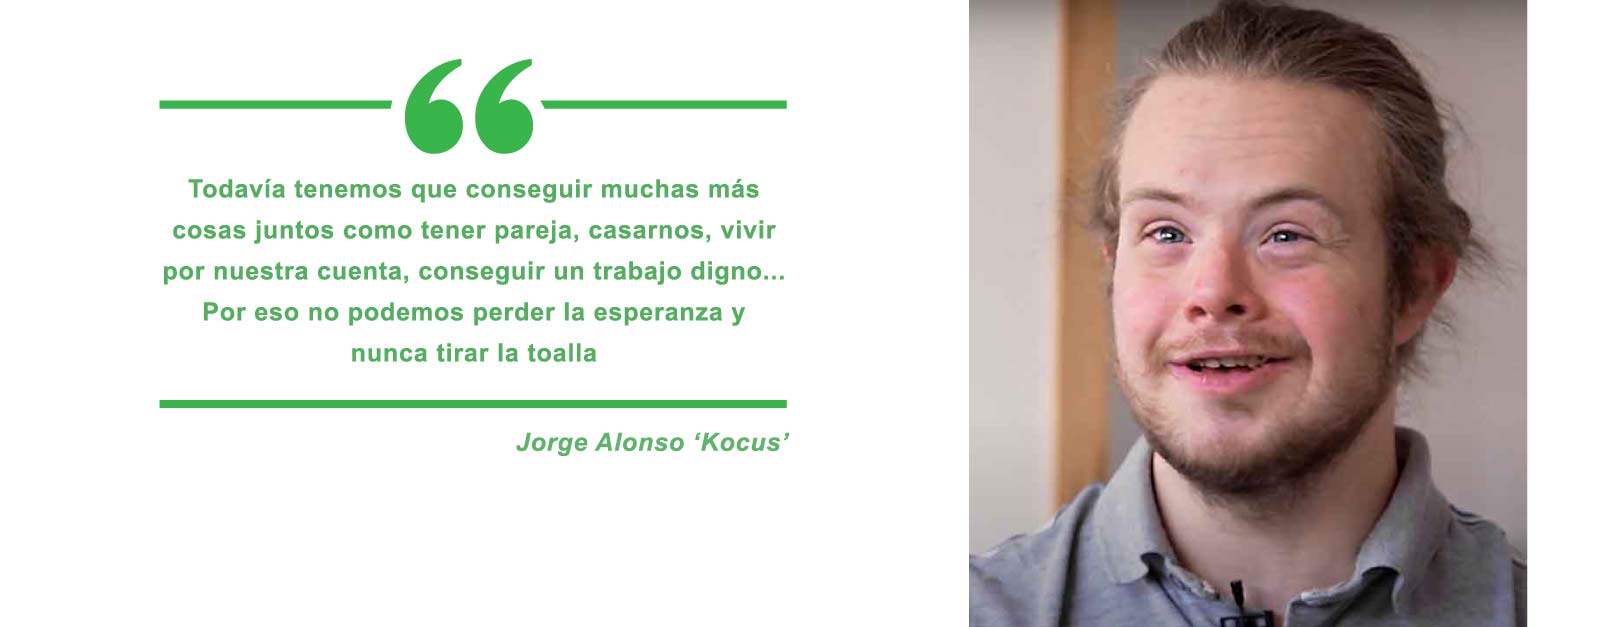 Jorge Alonso, Kocus, del comité de representantes